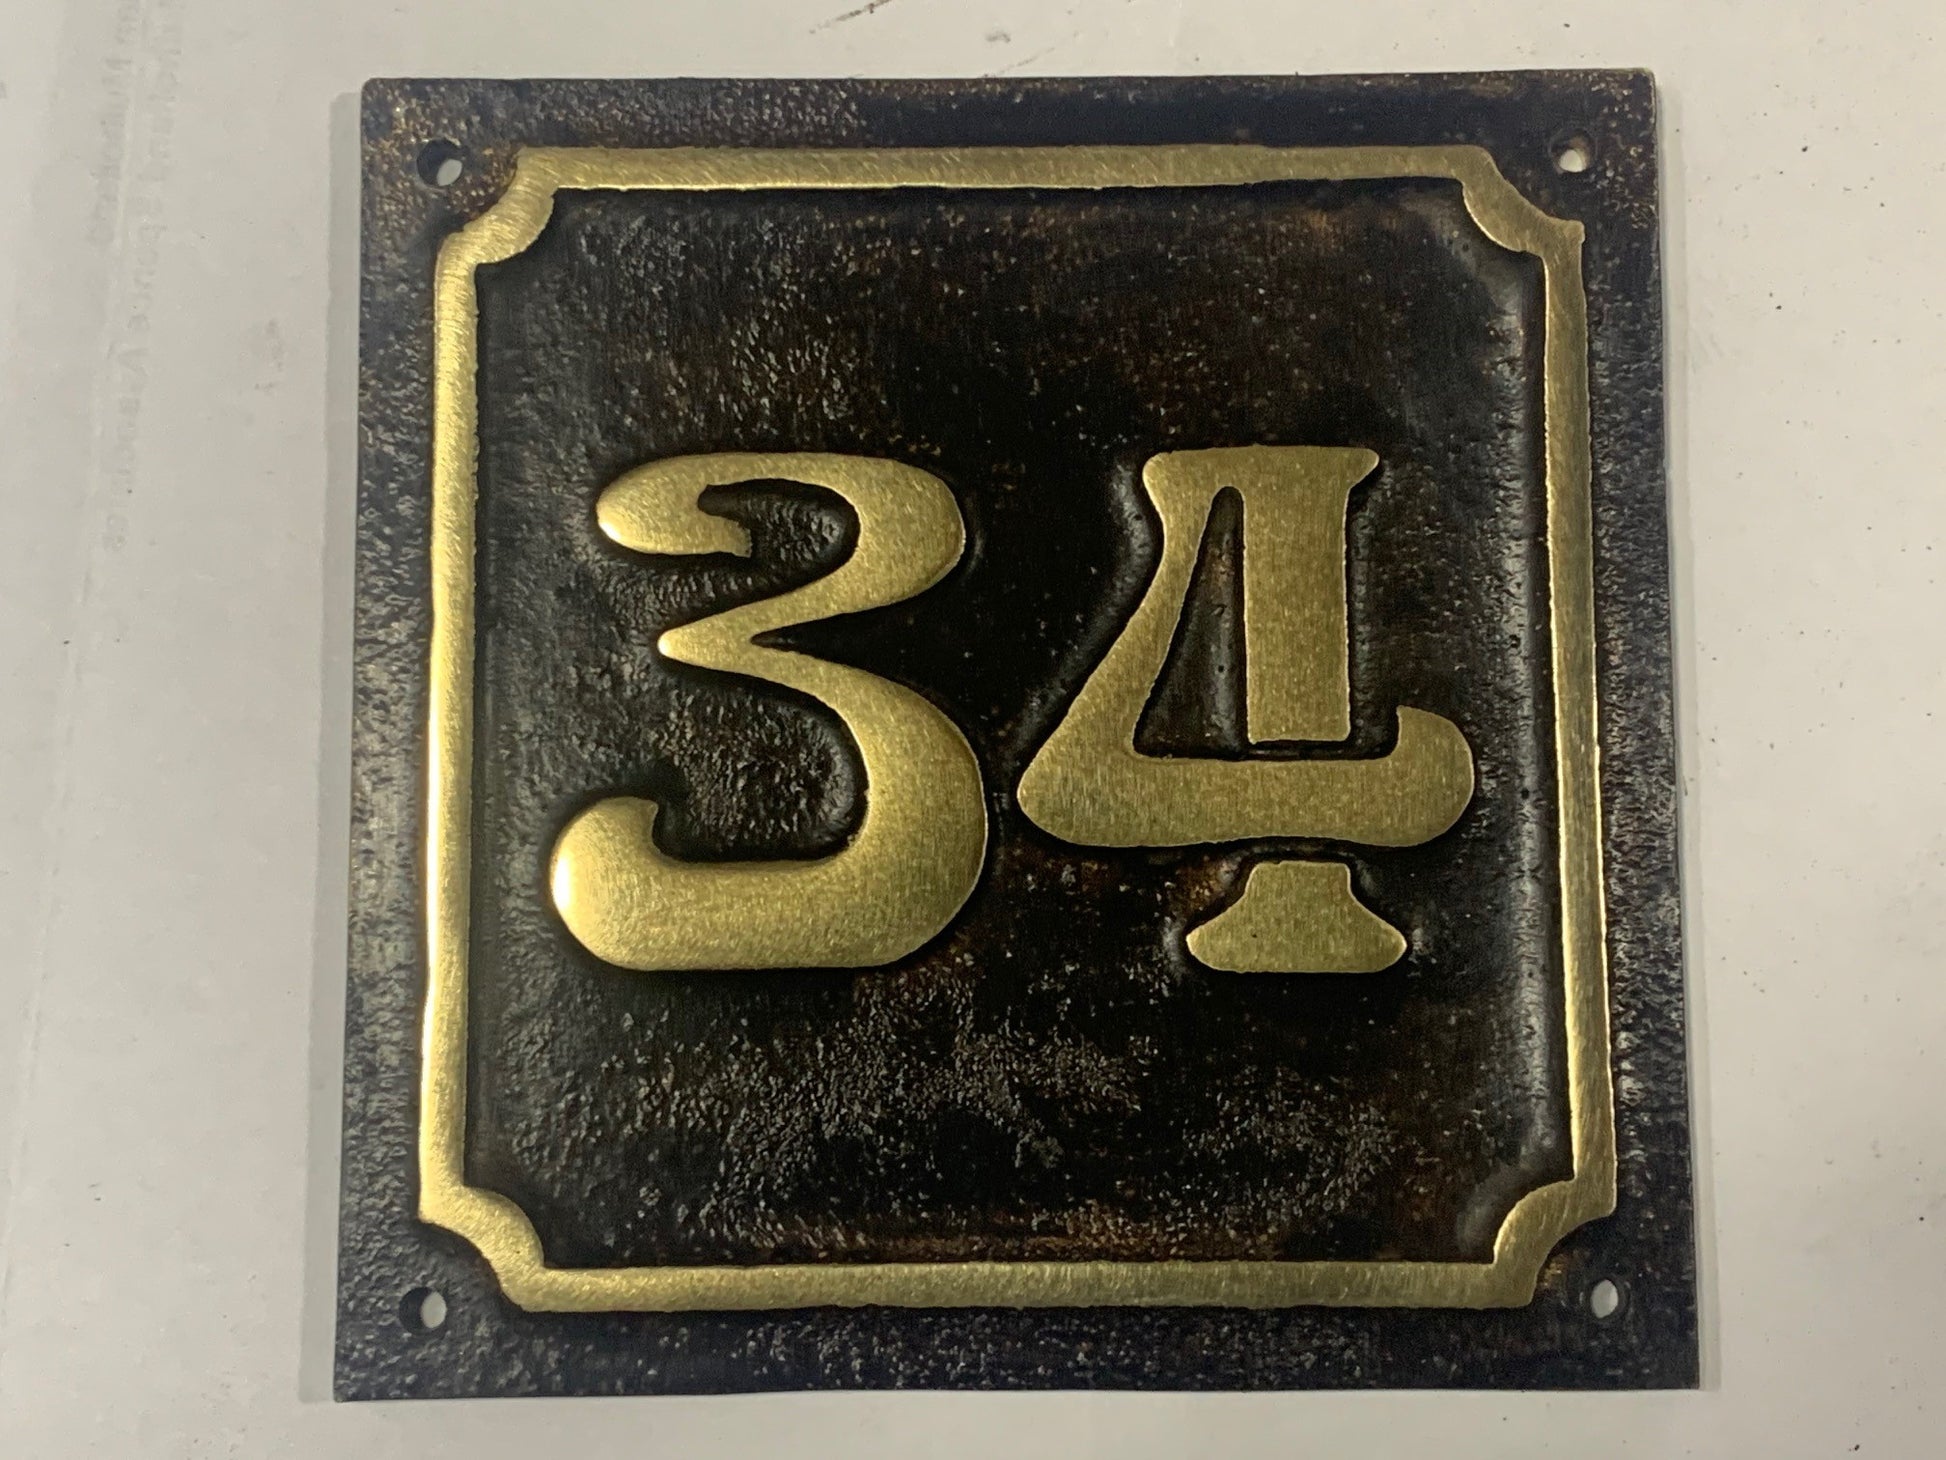 House Number Sign Art Nouveau Bronze 